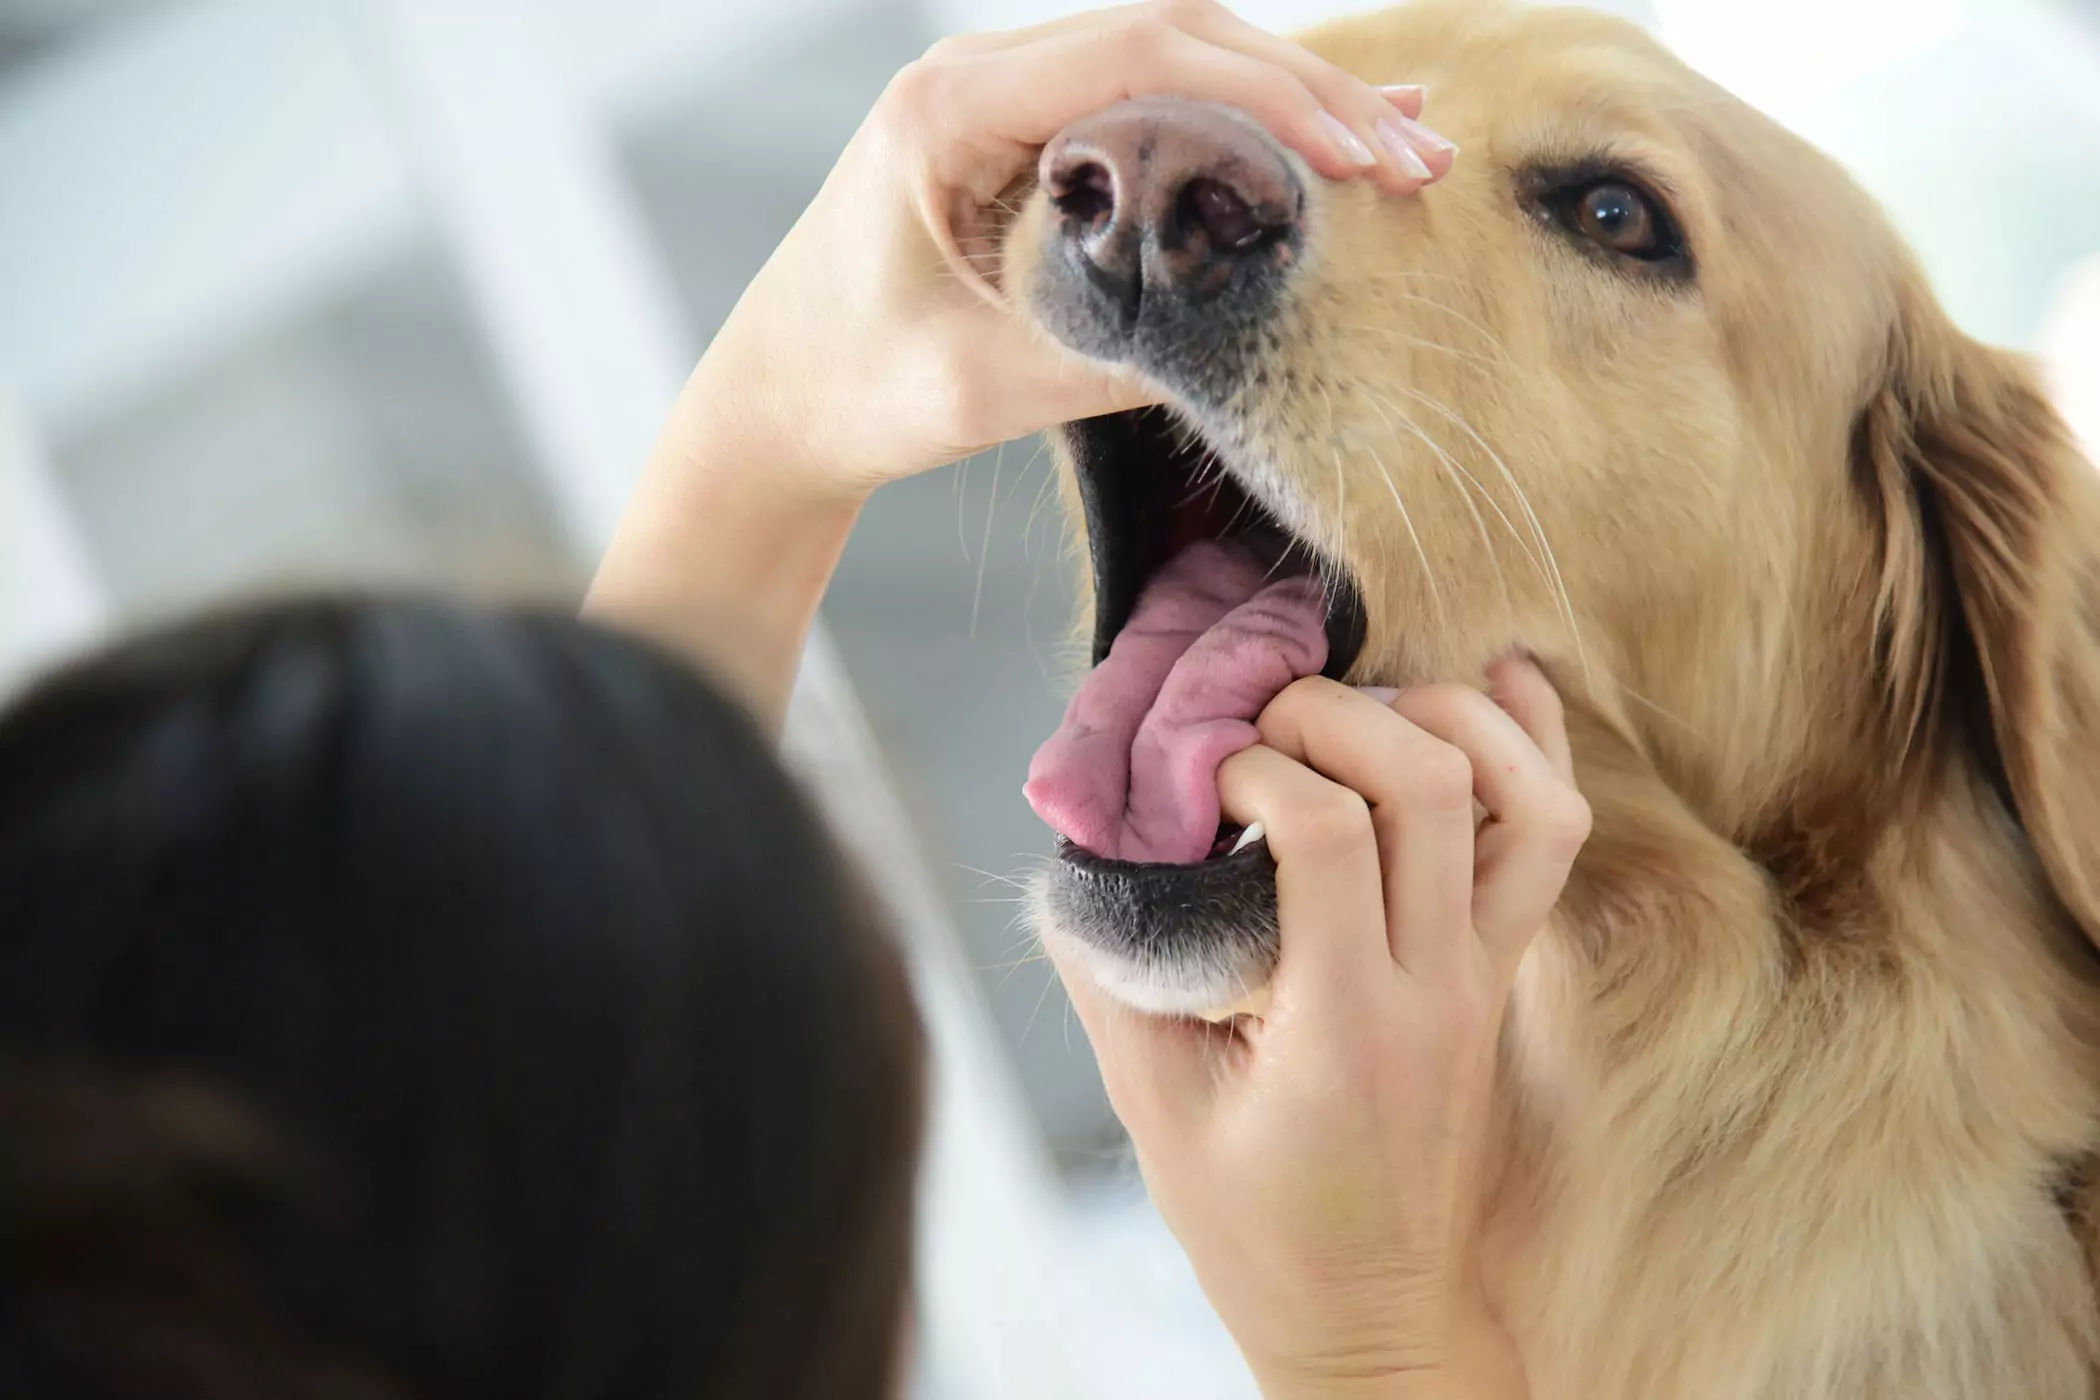 ¿La boca de un perro es más limpia que la de un humano? ¿La boca de un perro es más limpia que la de un humano? Este es un concepto robado, los dos no son comparables